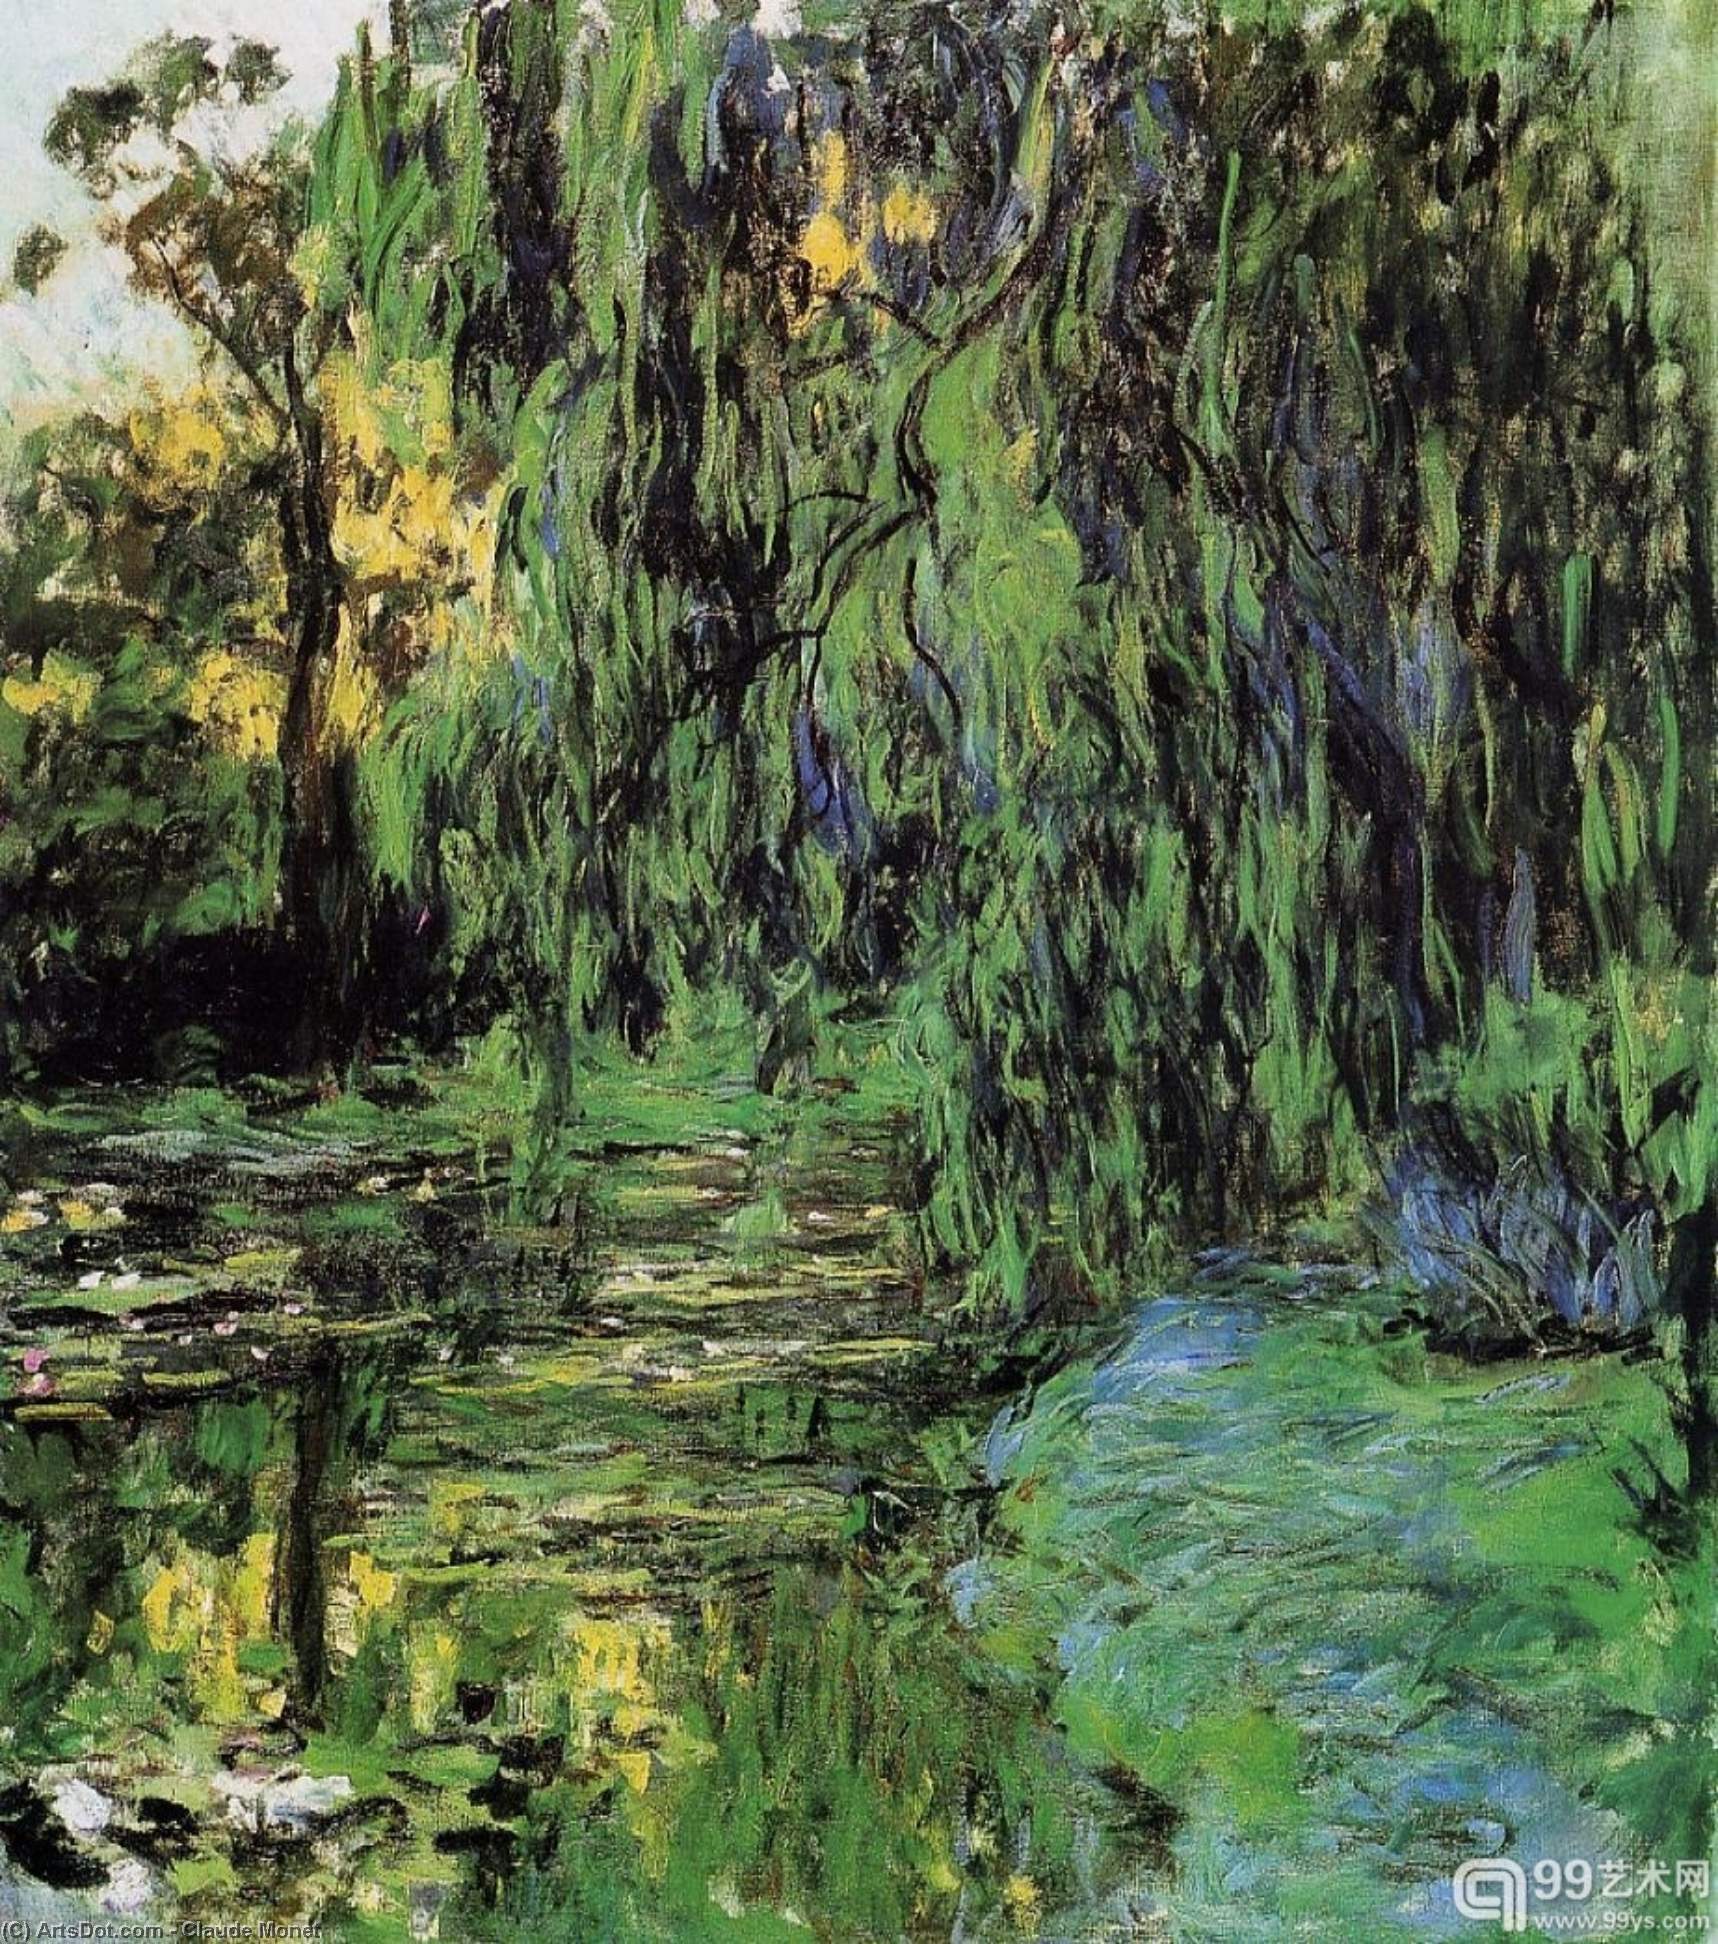 WikiOO.org - אנציקלופדיה לאמנויות יפות - ציור, יצירות אמנות Claude Monet - Weeping Willow and Water-Lily Pond